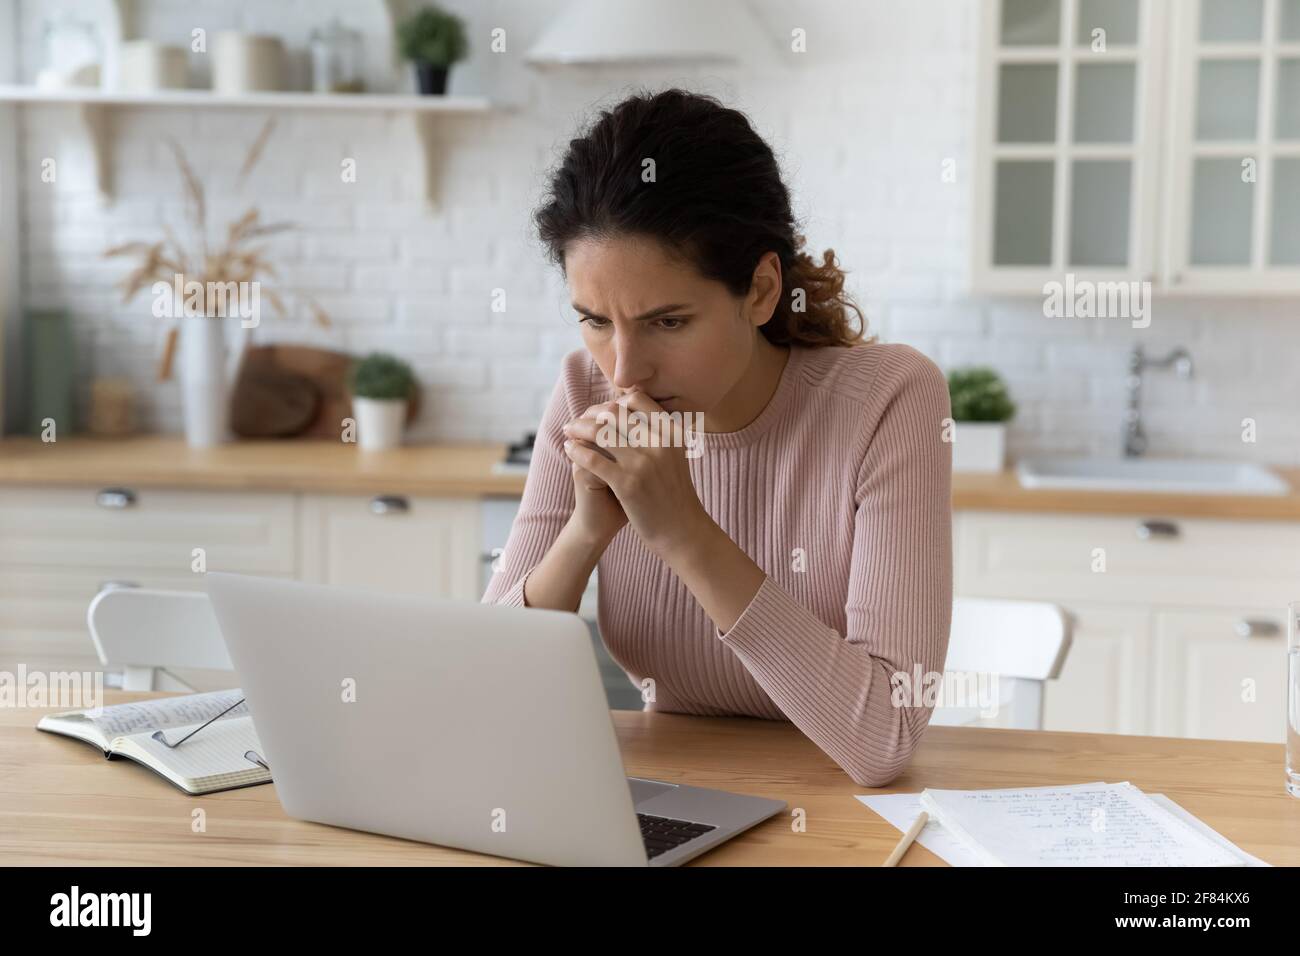 Une femme latine inquiète s'asseoir dans la cuisine sur le lieu de travail de répondre à un problème difficile Banque D'Images